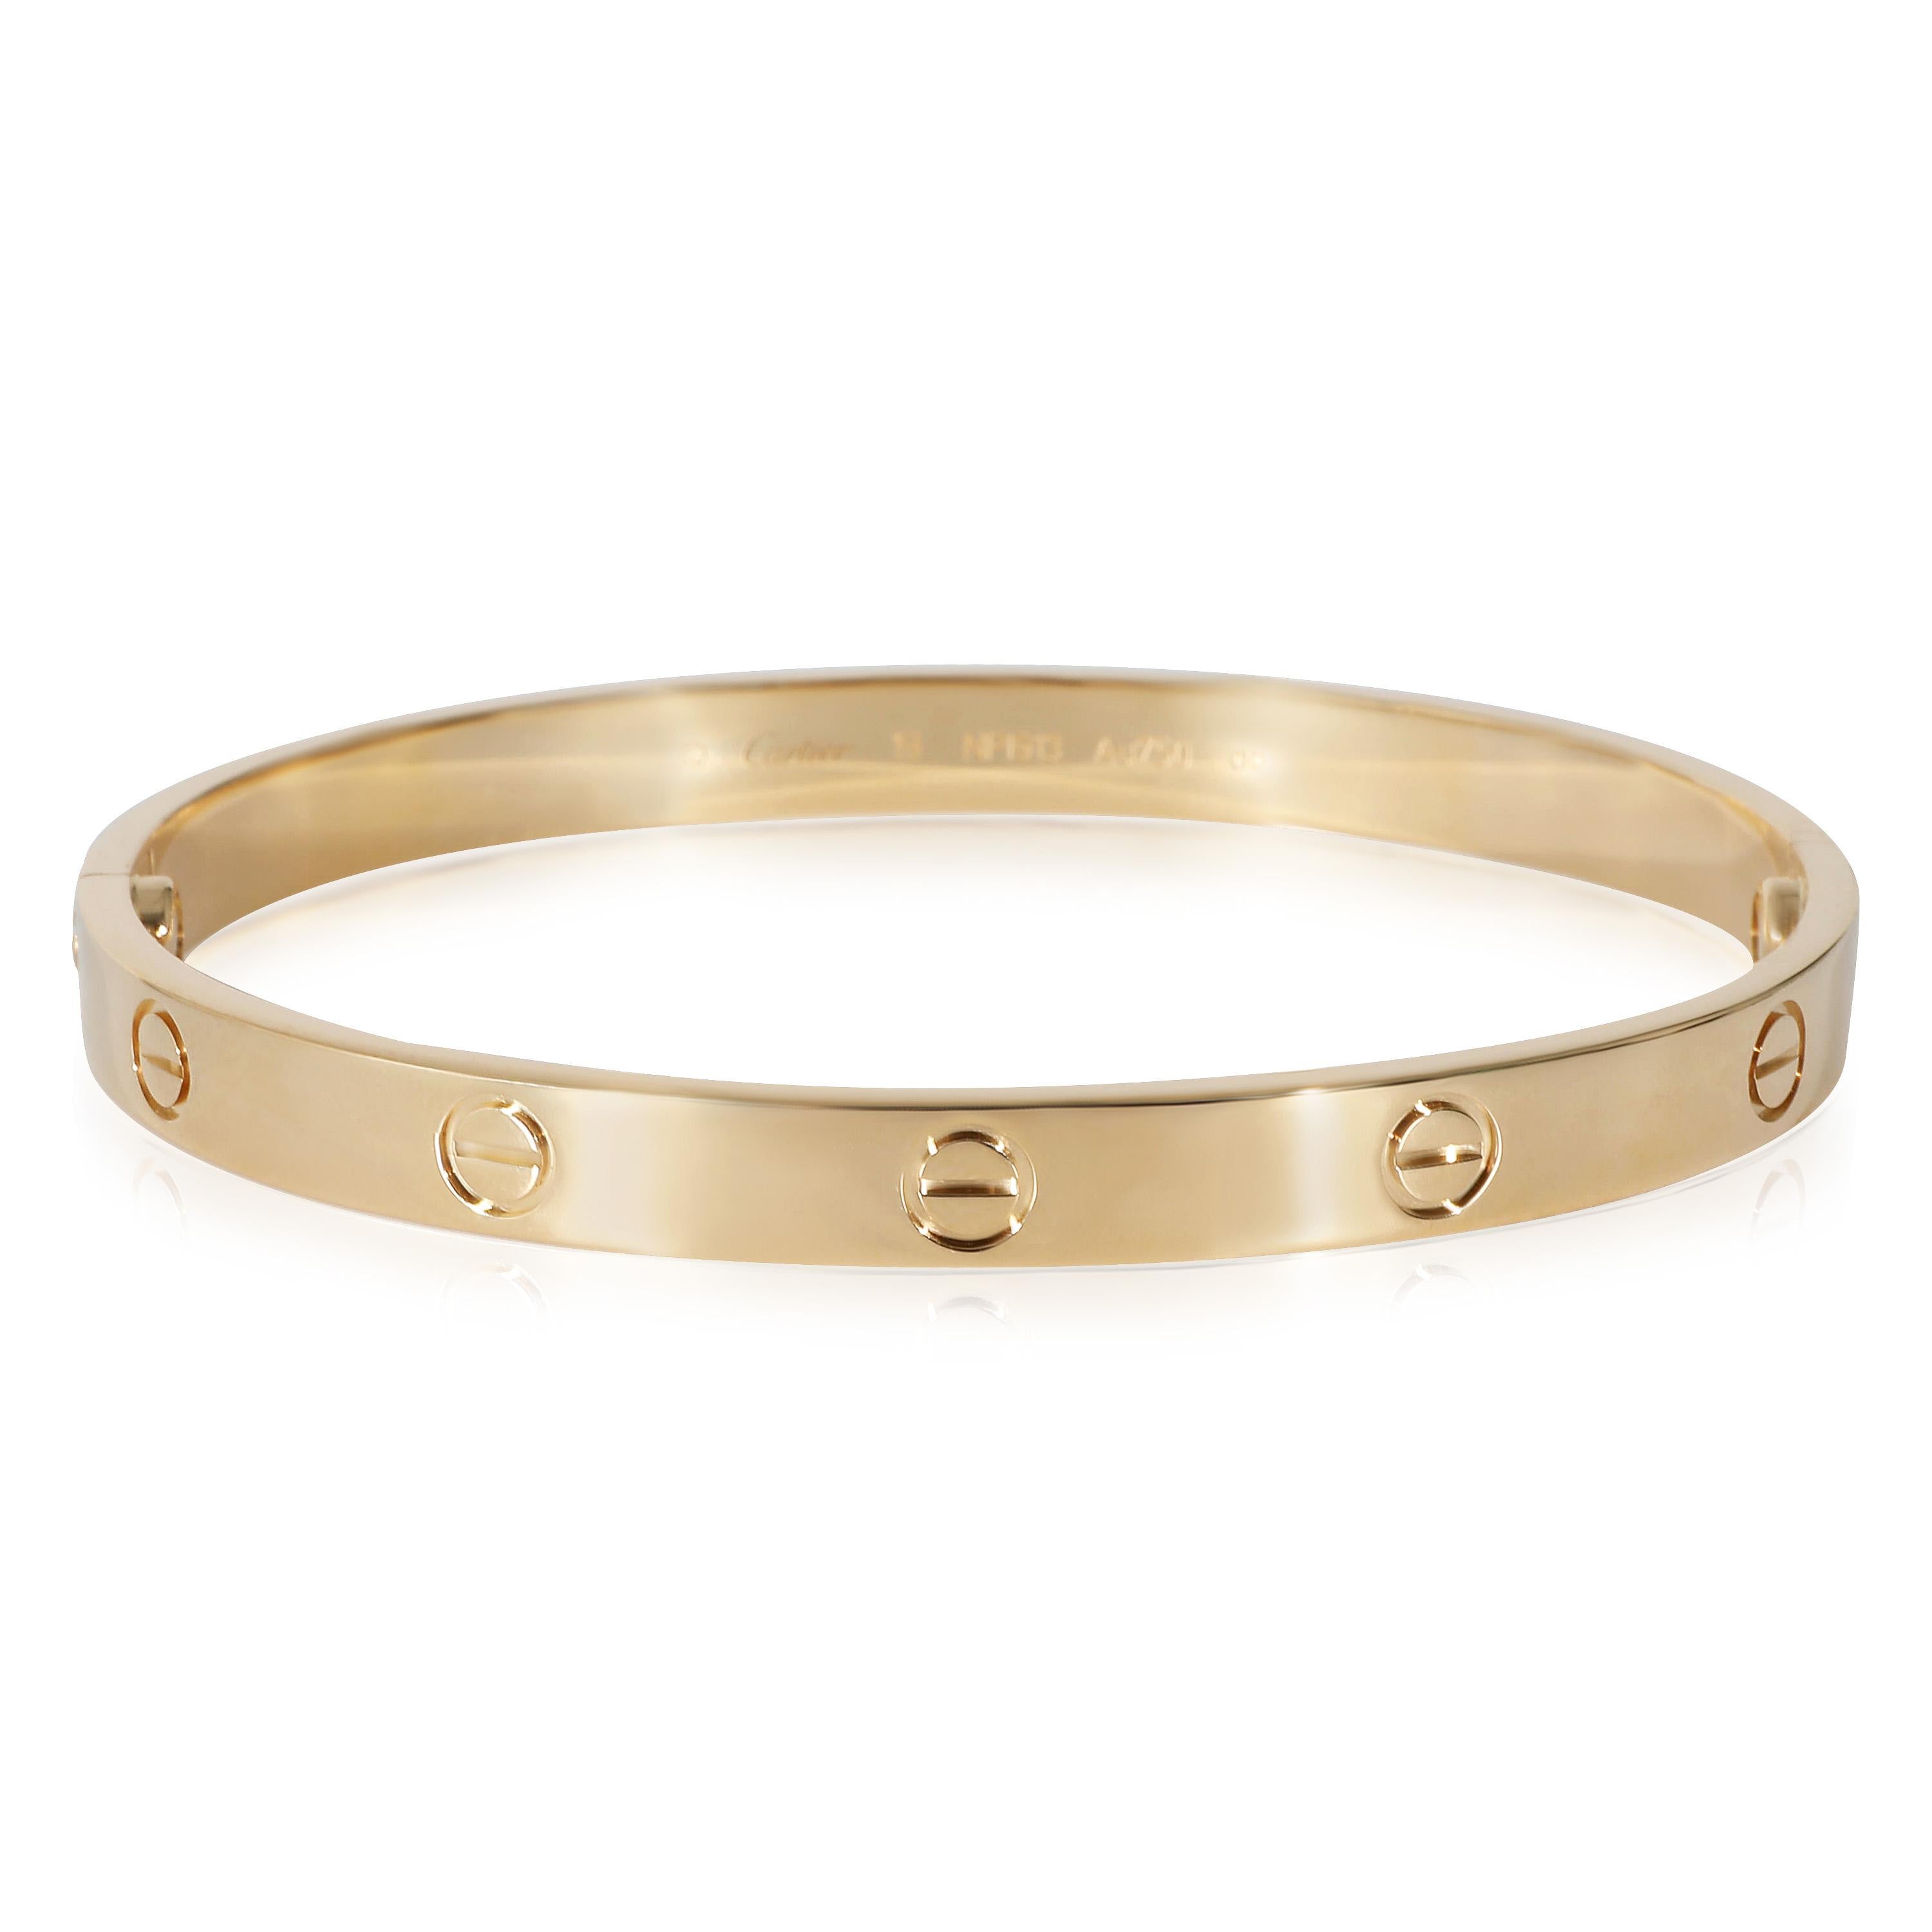 Women's or Men's Cartier Love Bracelet In 18K Yellow Gold, Size 19